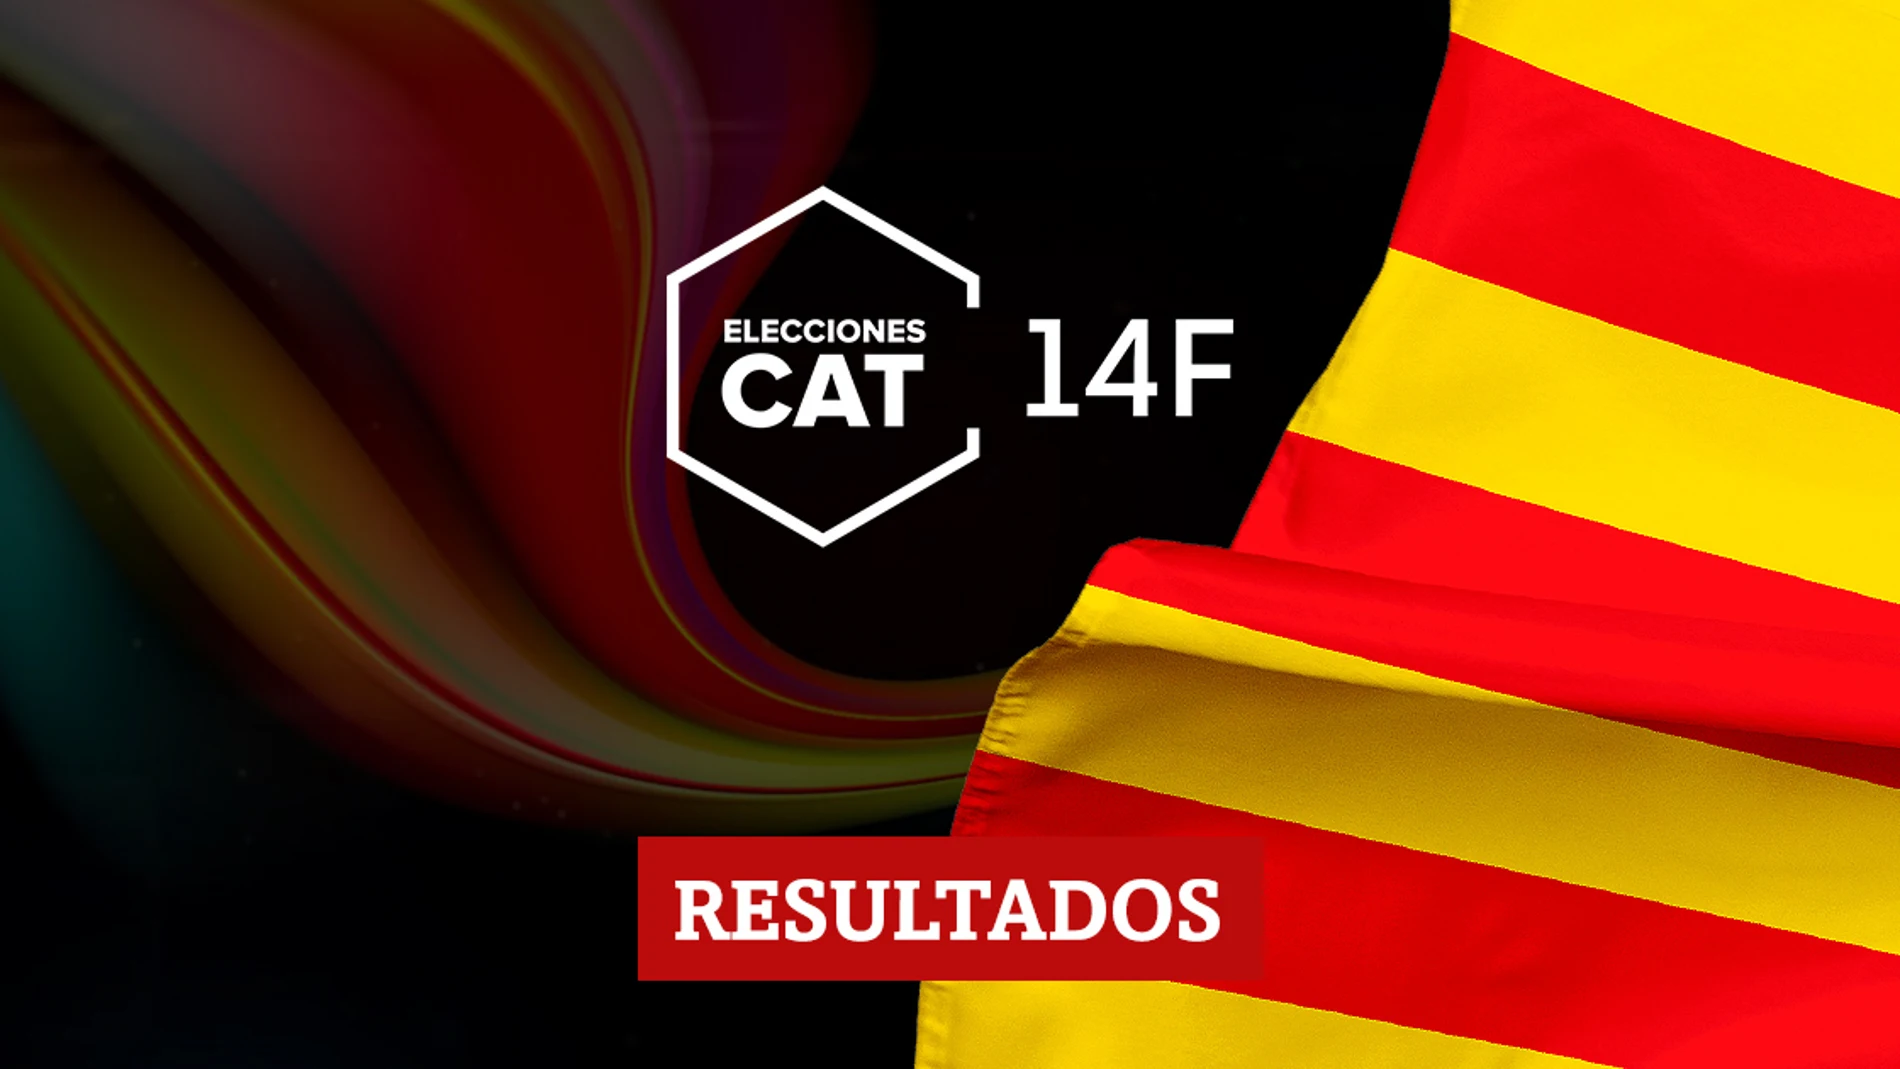 Resultados en Fonollosa de las elecciones catalanas del 14F 2021